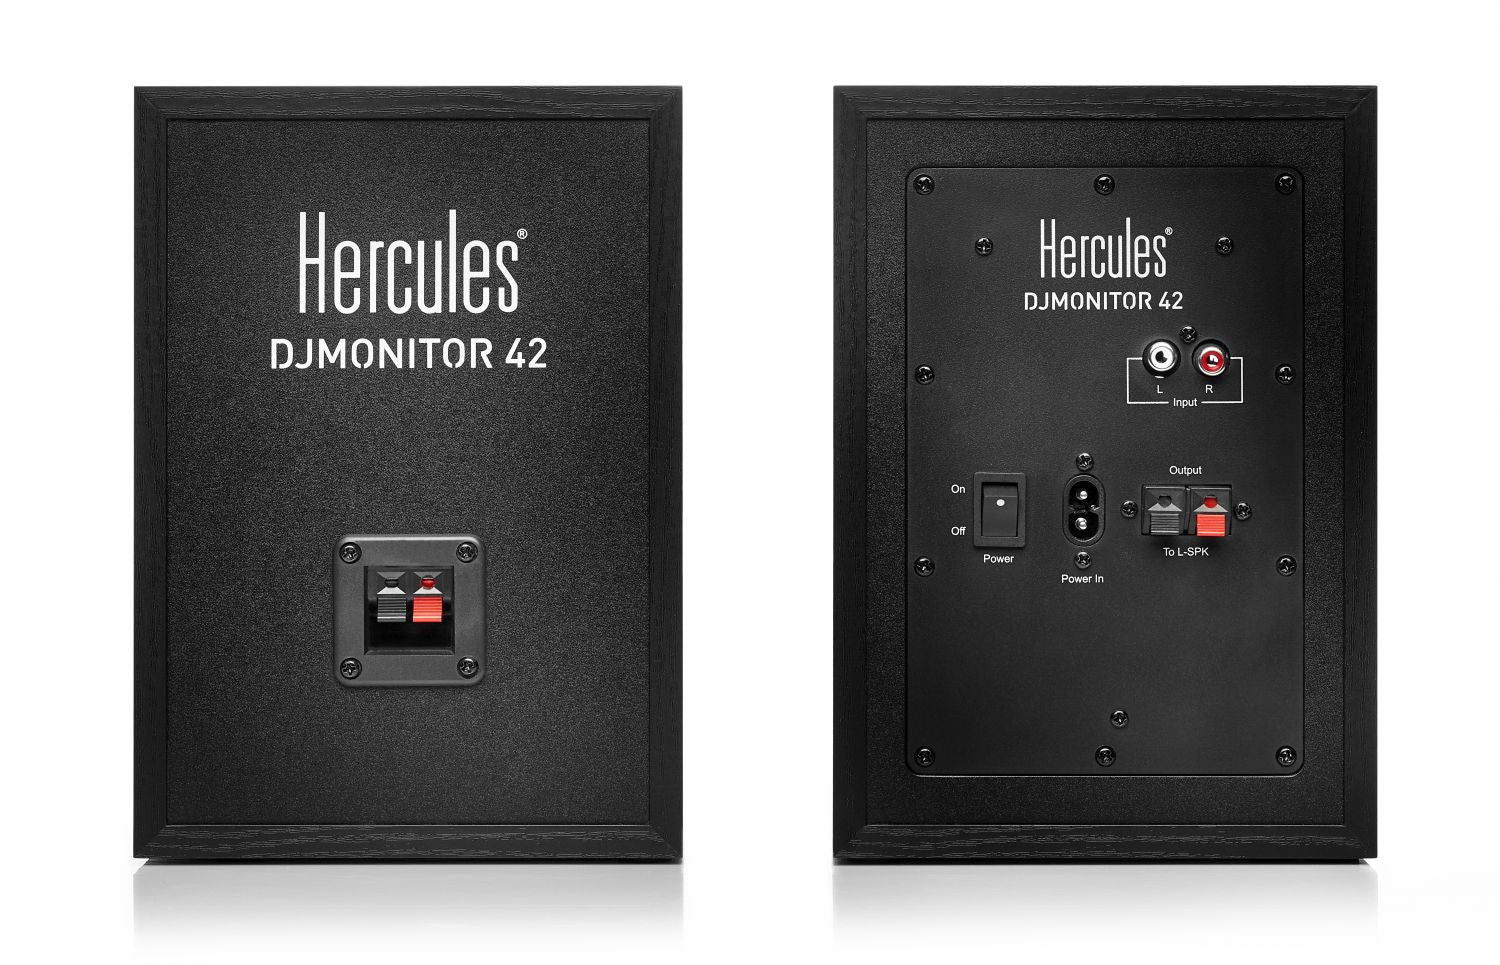 HERCULES DJ MONITOR 42 HERCULES